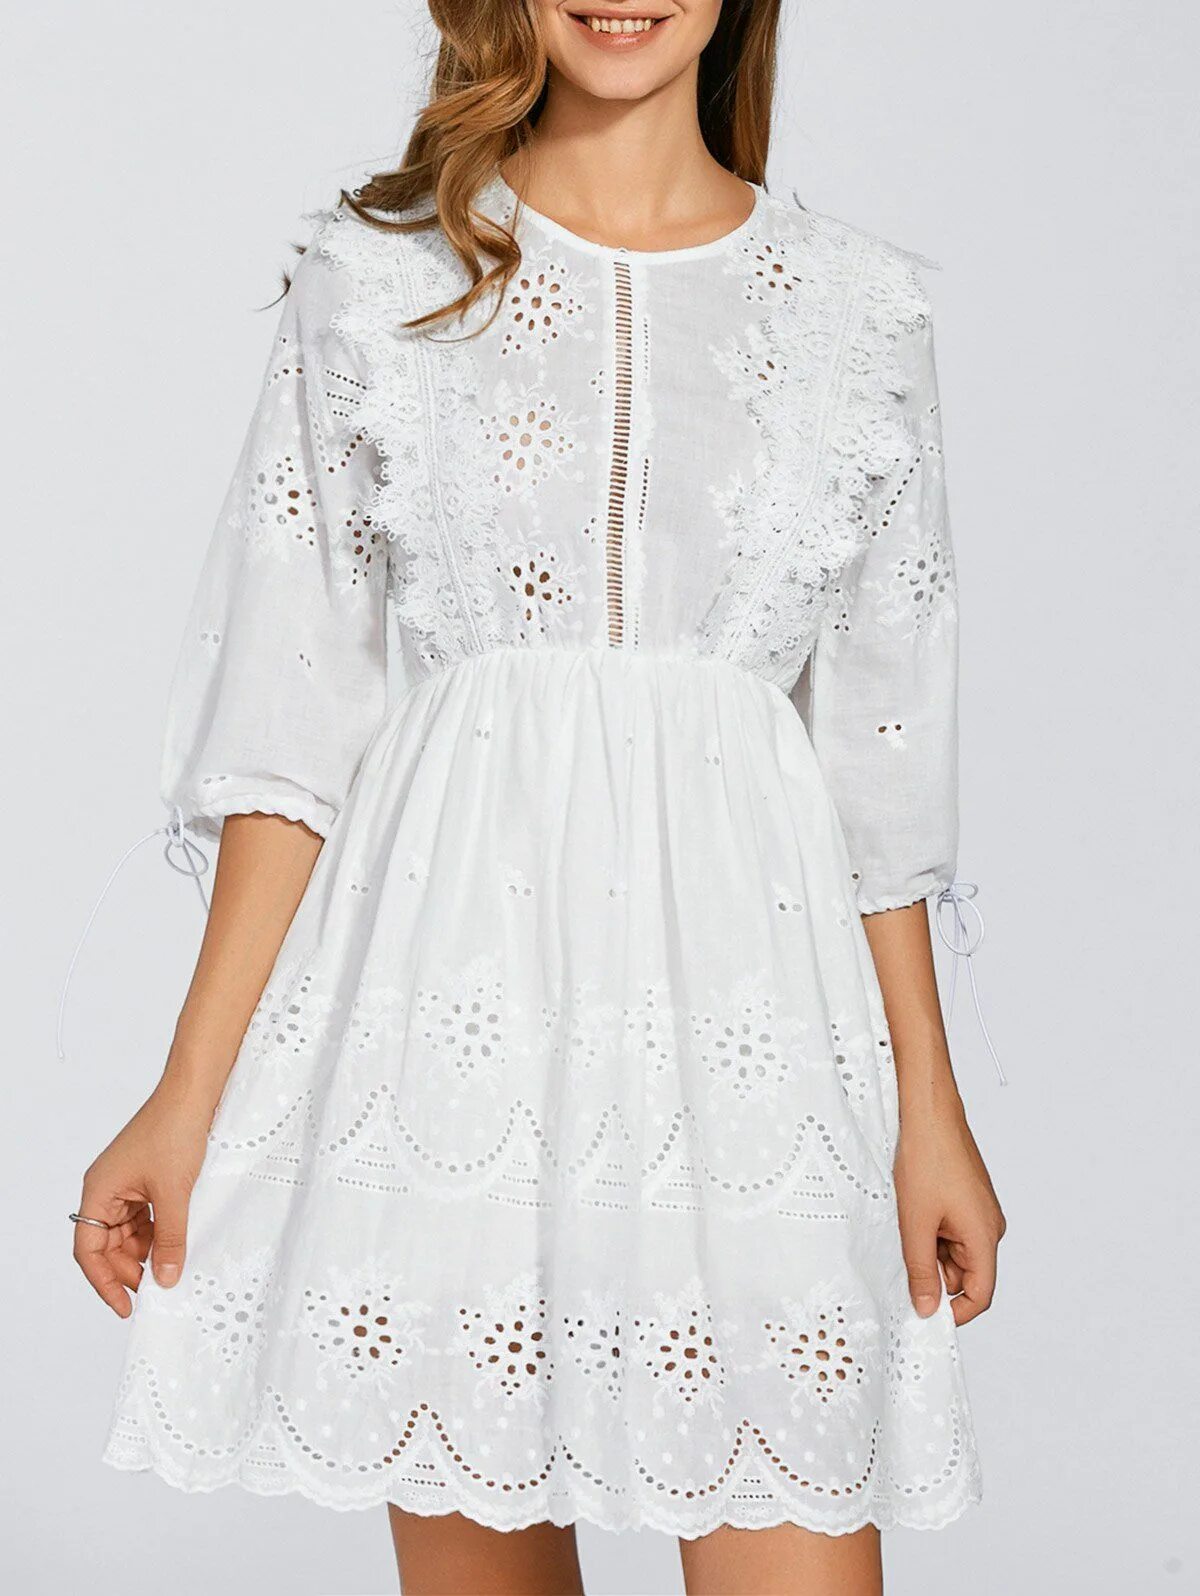 Белое платье хлопок. Платье хлопок с кружевом. Платье из хлопка с кружевом. Белое хлопковое платье с кружевом. Платья хлопок озон